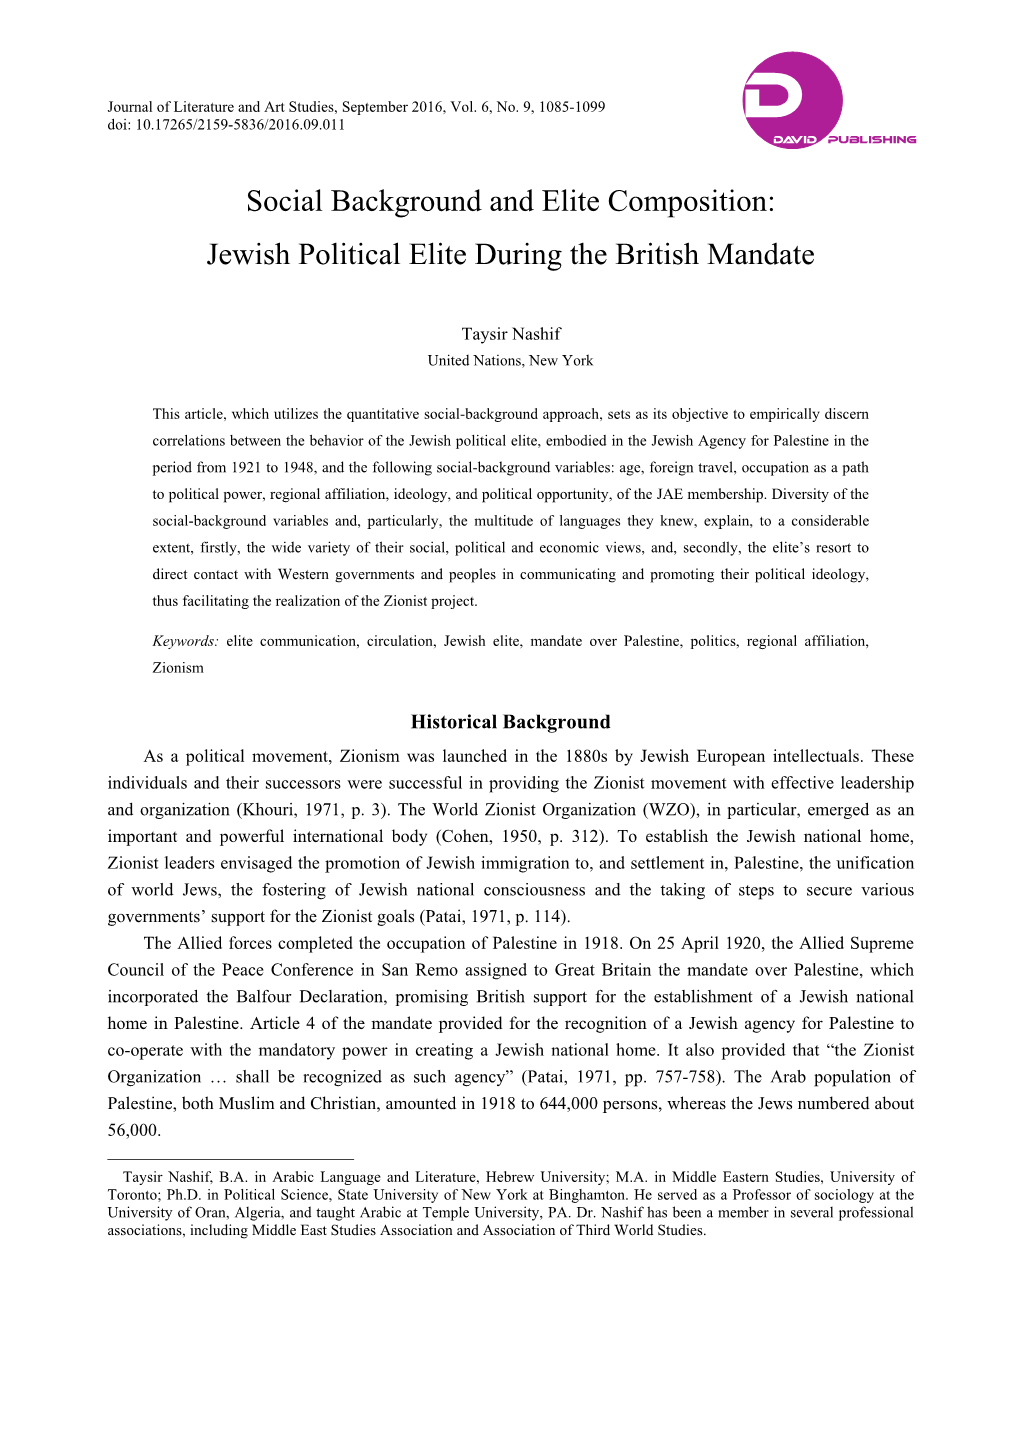 Jewish Political Elite During the British Mandate